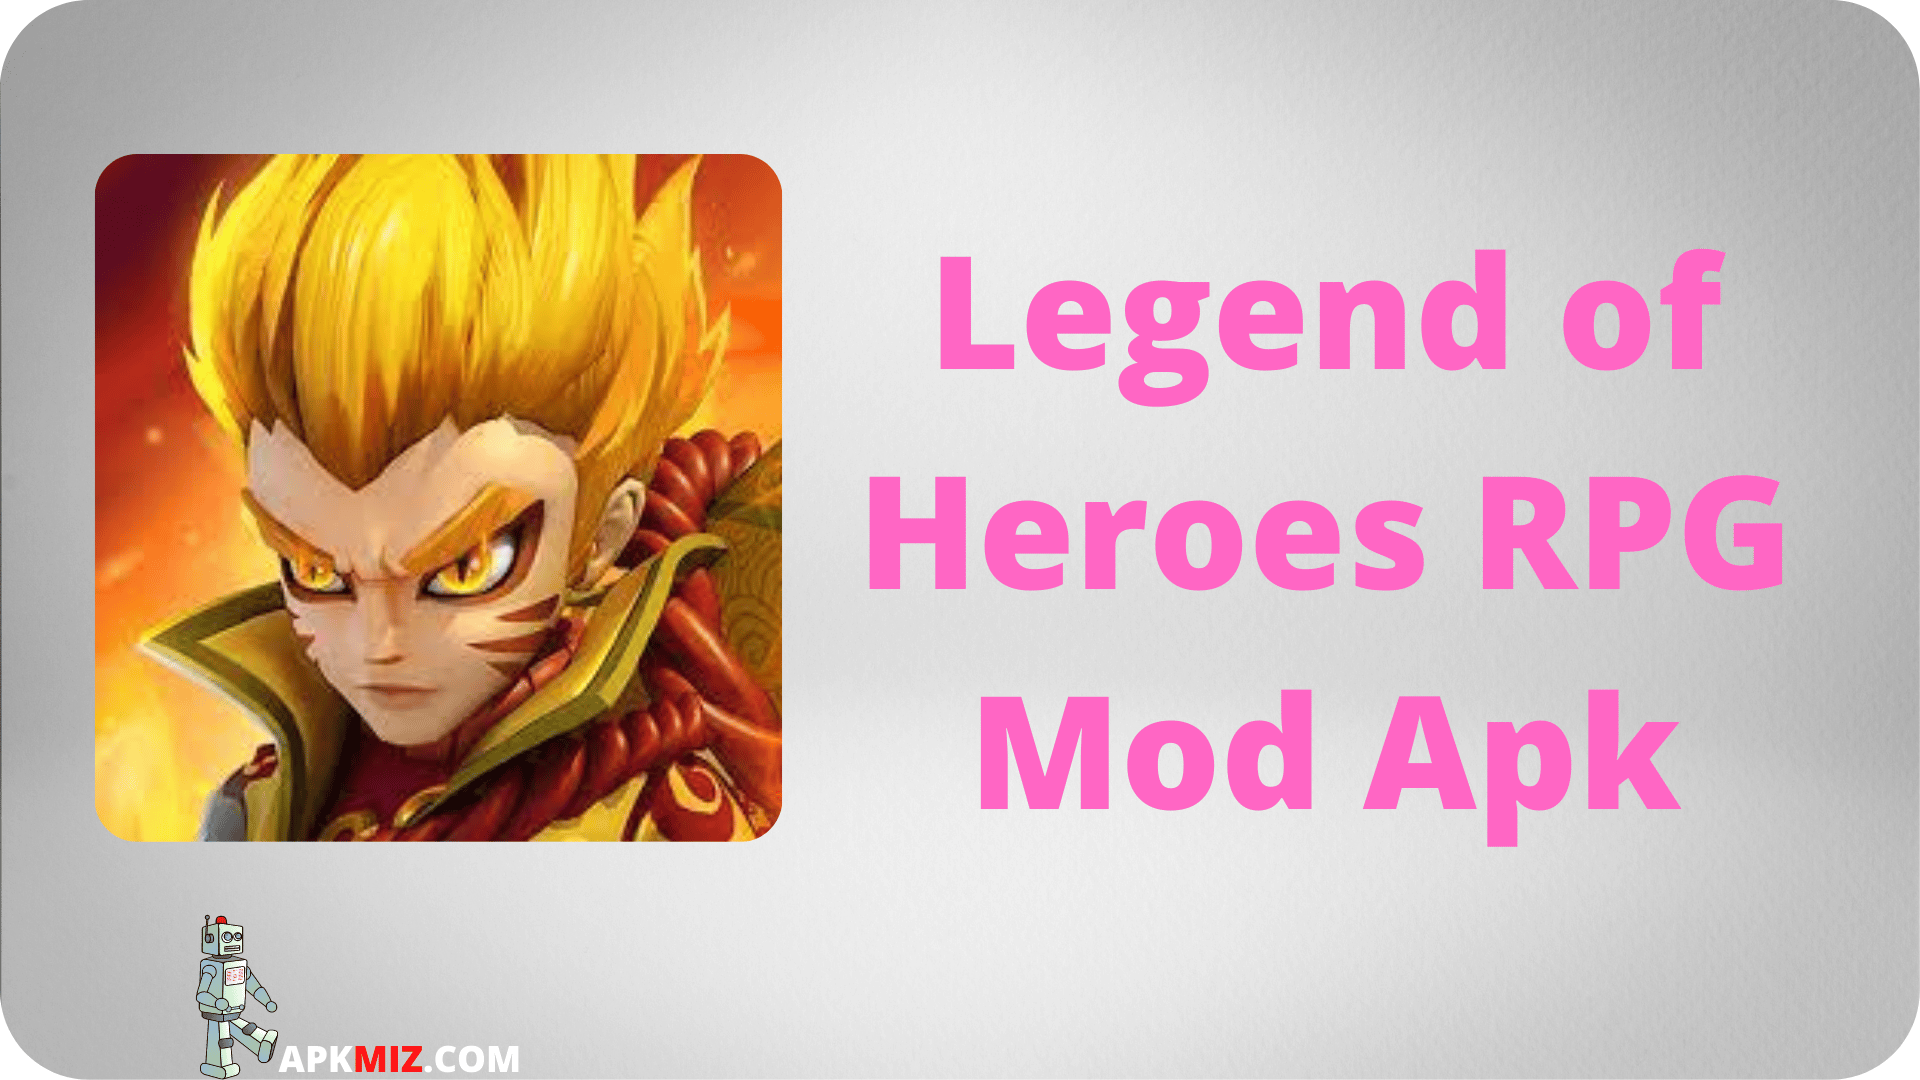 Legend of Heroes RPG Mod Apk